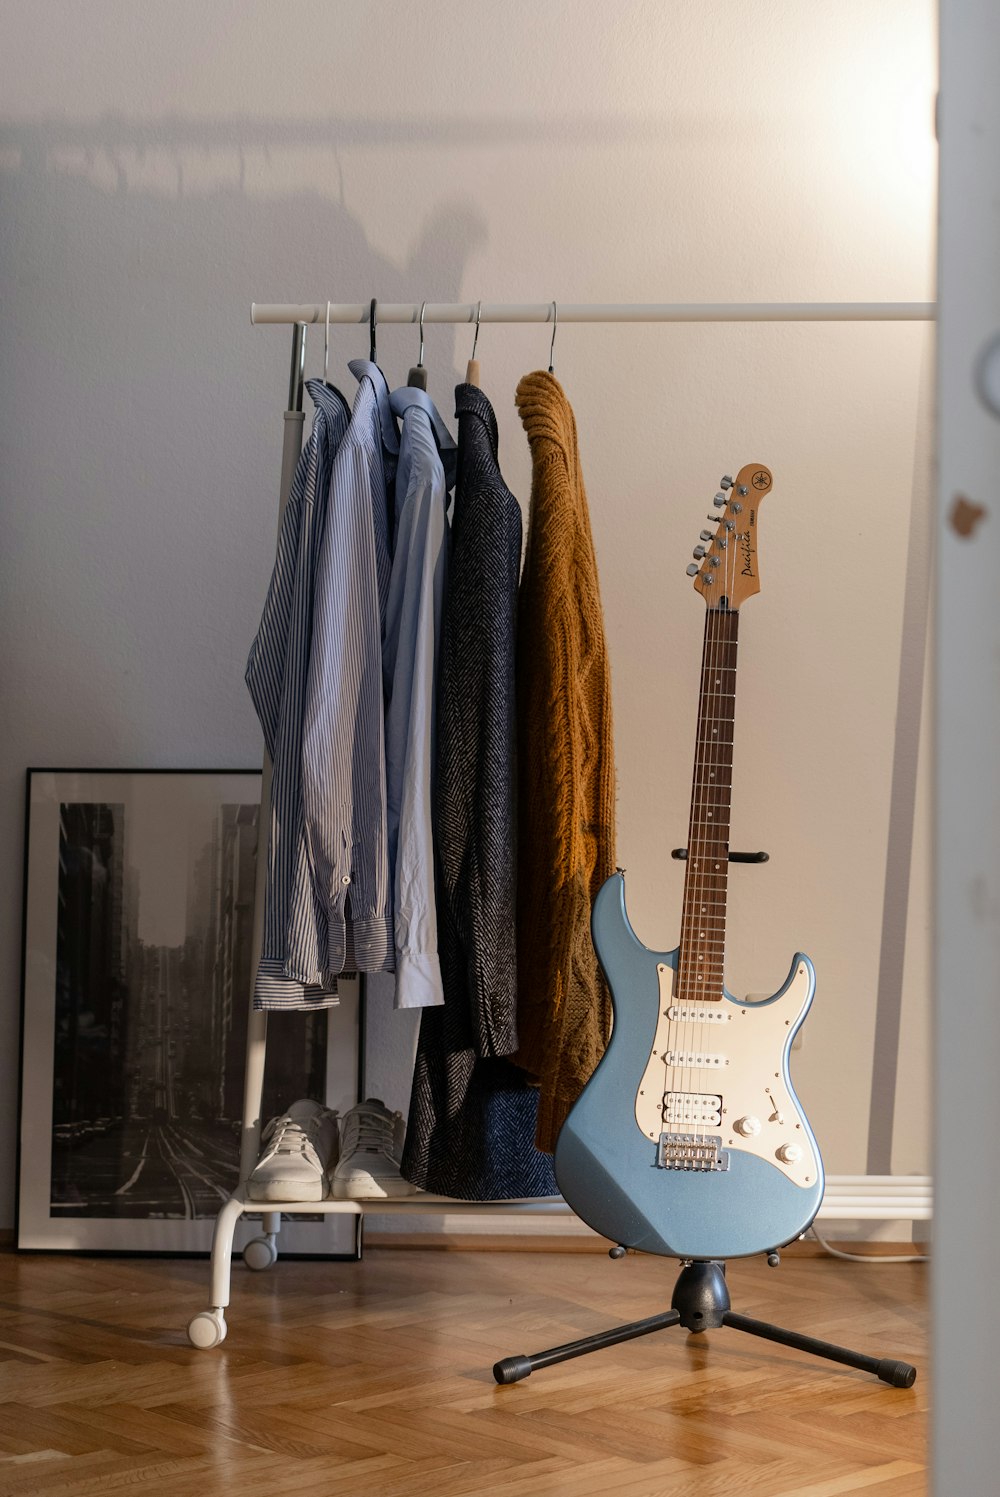 guitarra elétrica stratocaster marrom e branca